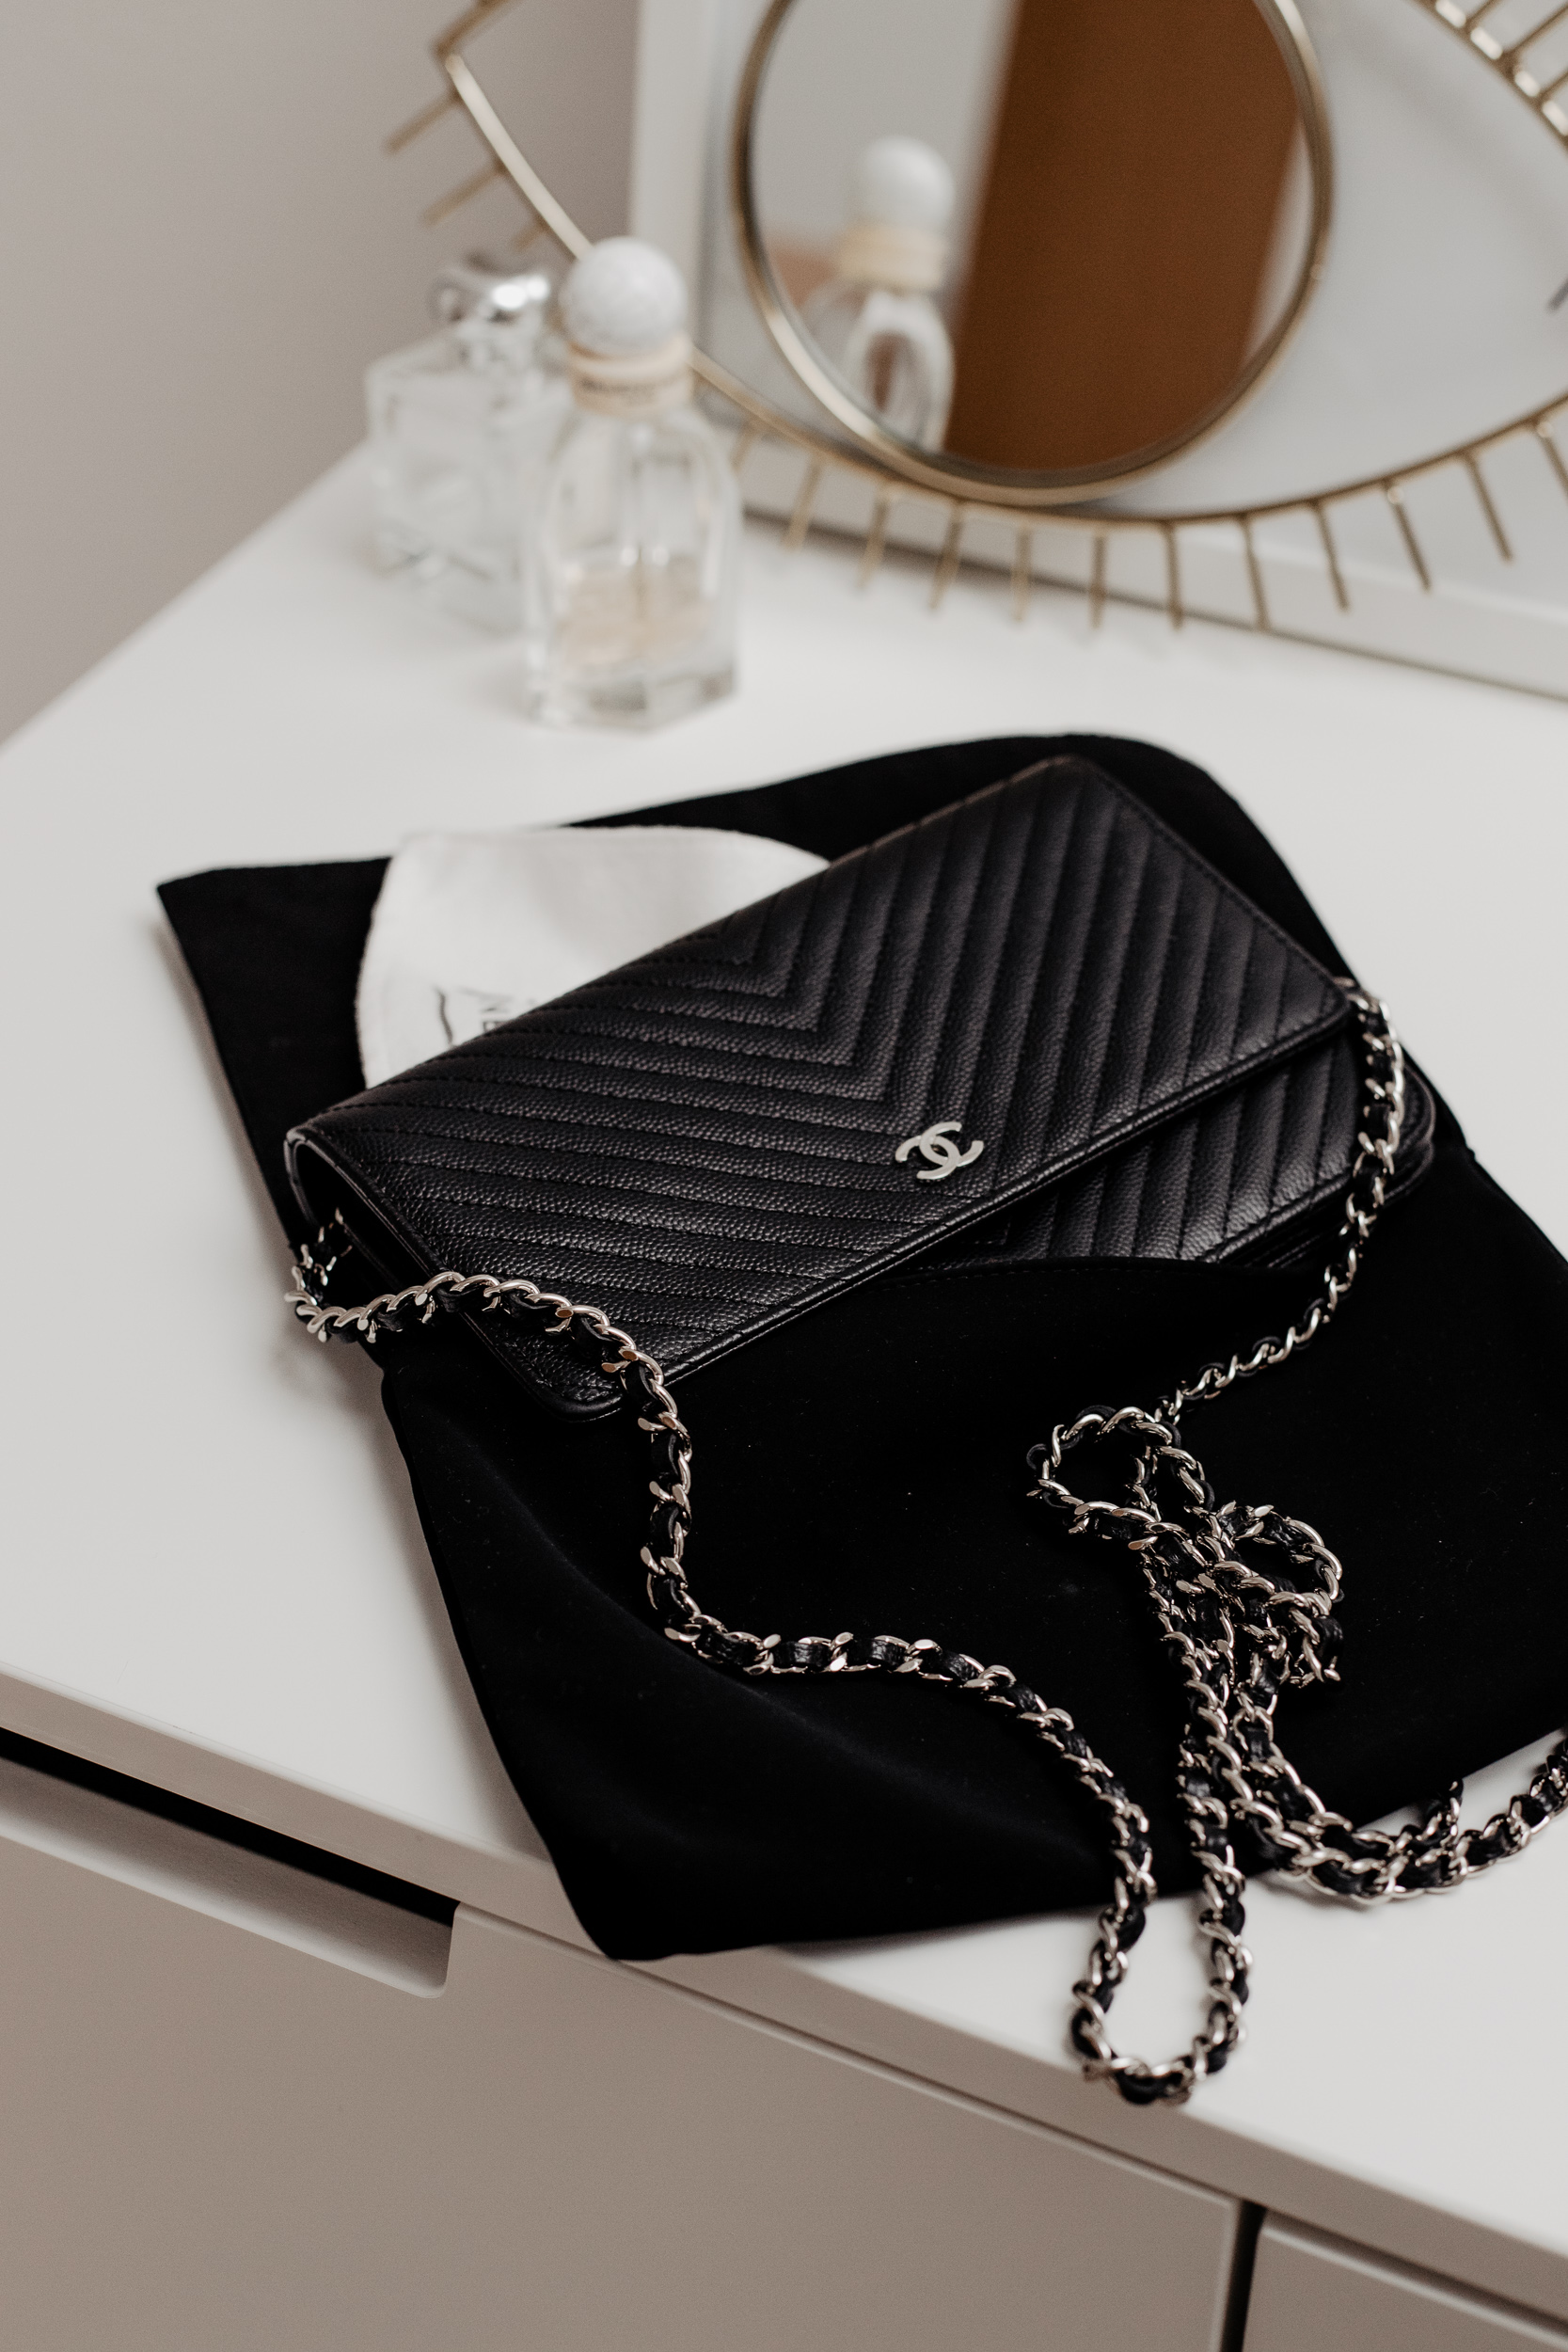 Handelt es sich um eine echte Chanel Tasche? Wenn ja, kennt einer das  Modell? (Fake, Original, Vintage)